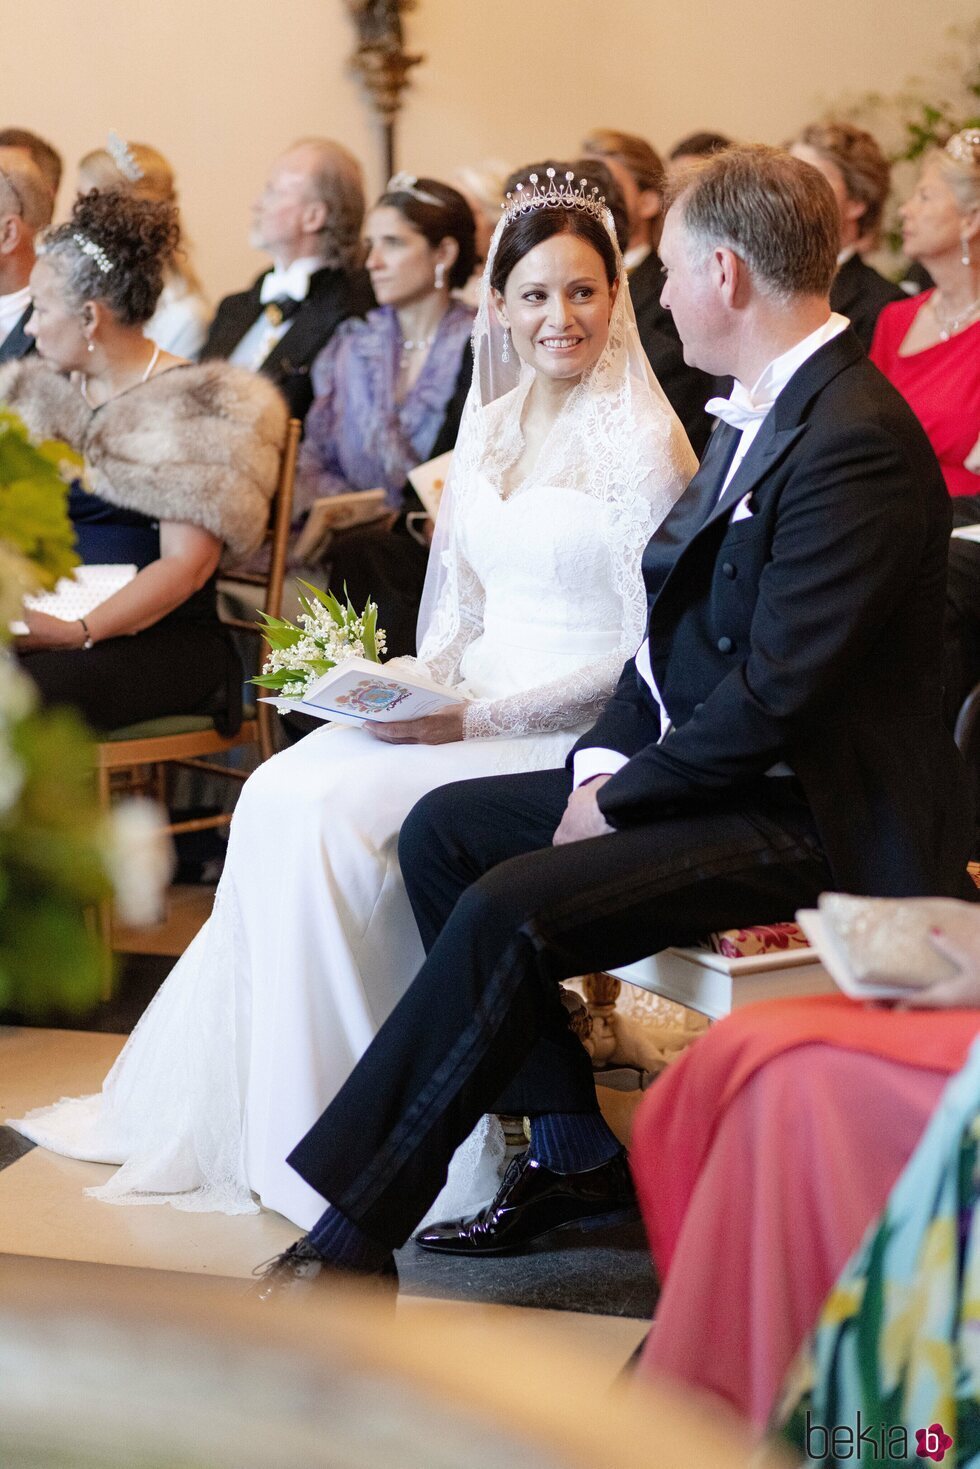 Gustav zu Sayn-Wittgenstein-Berleburg y Carina Axelsson en la celebración de su boda